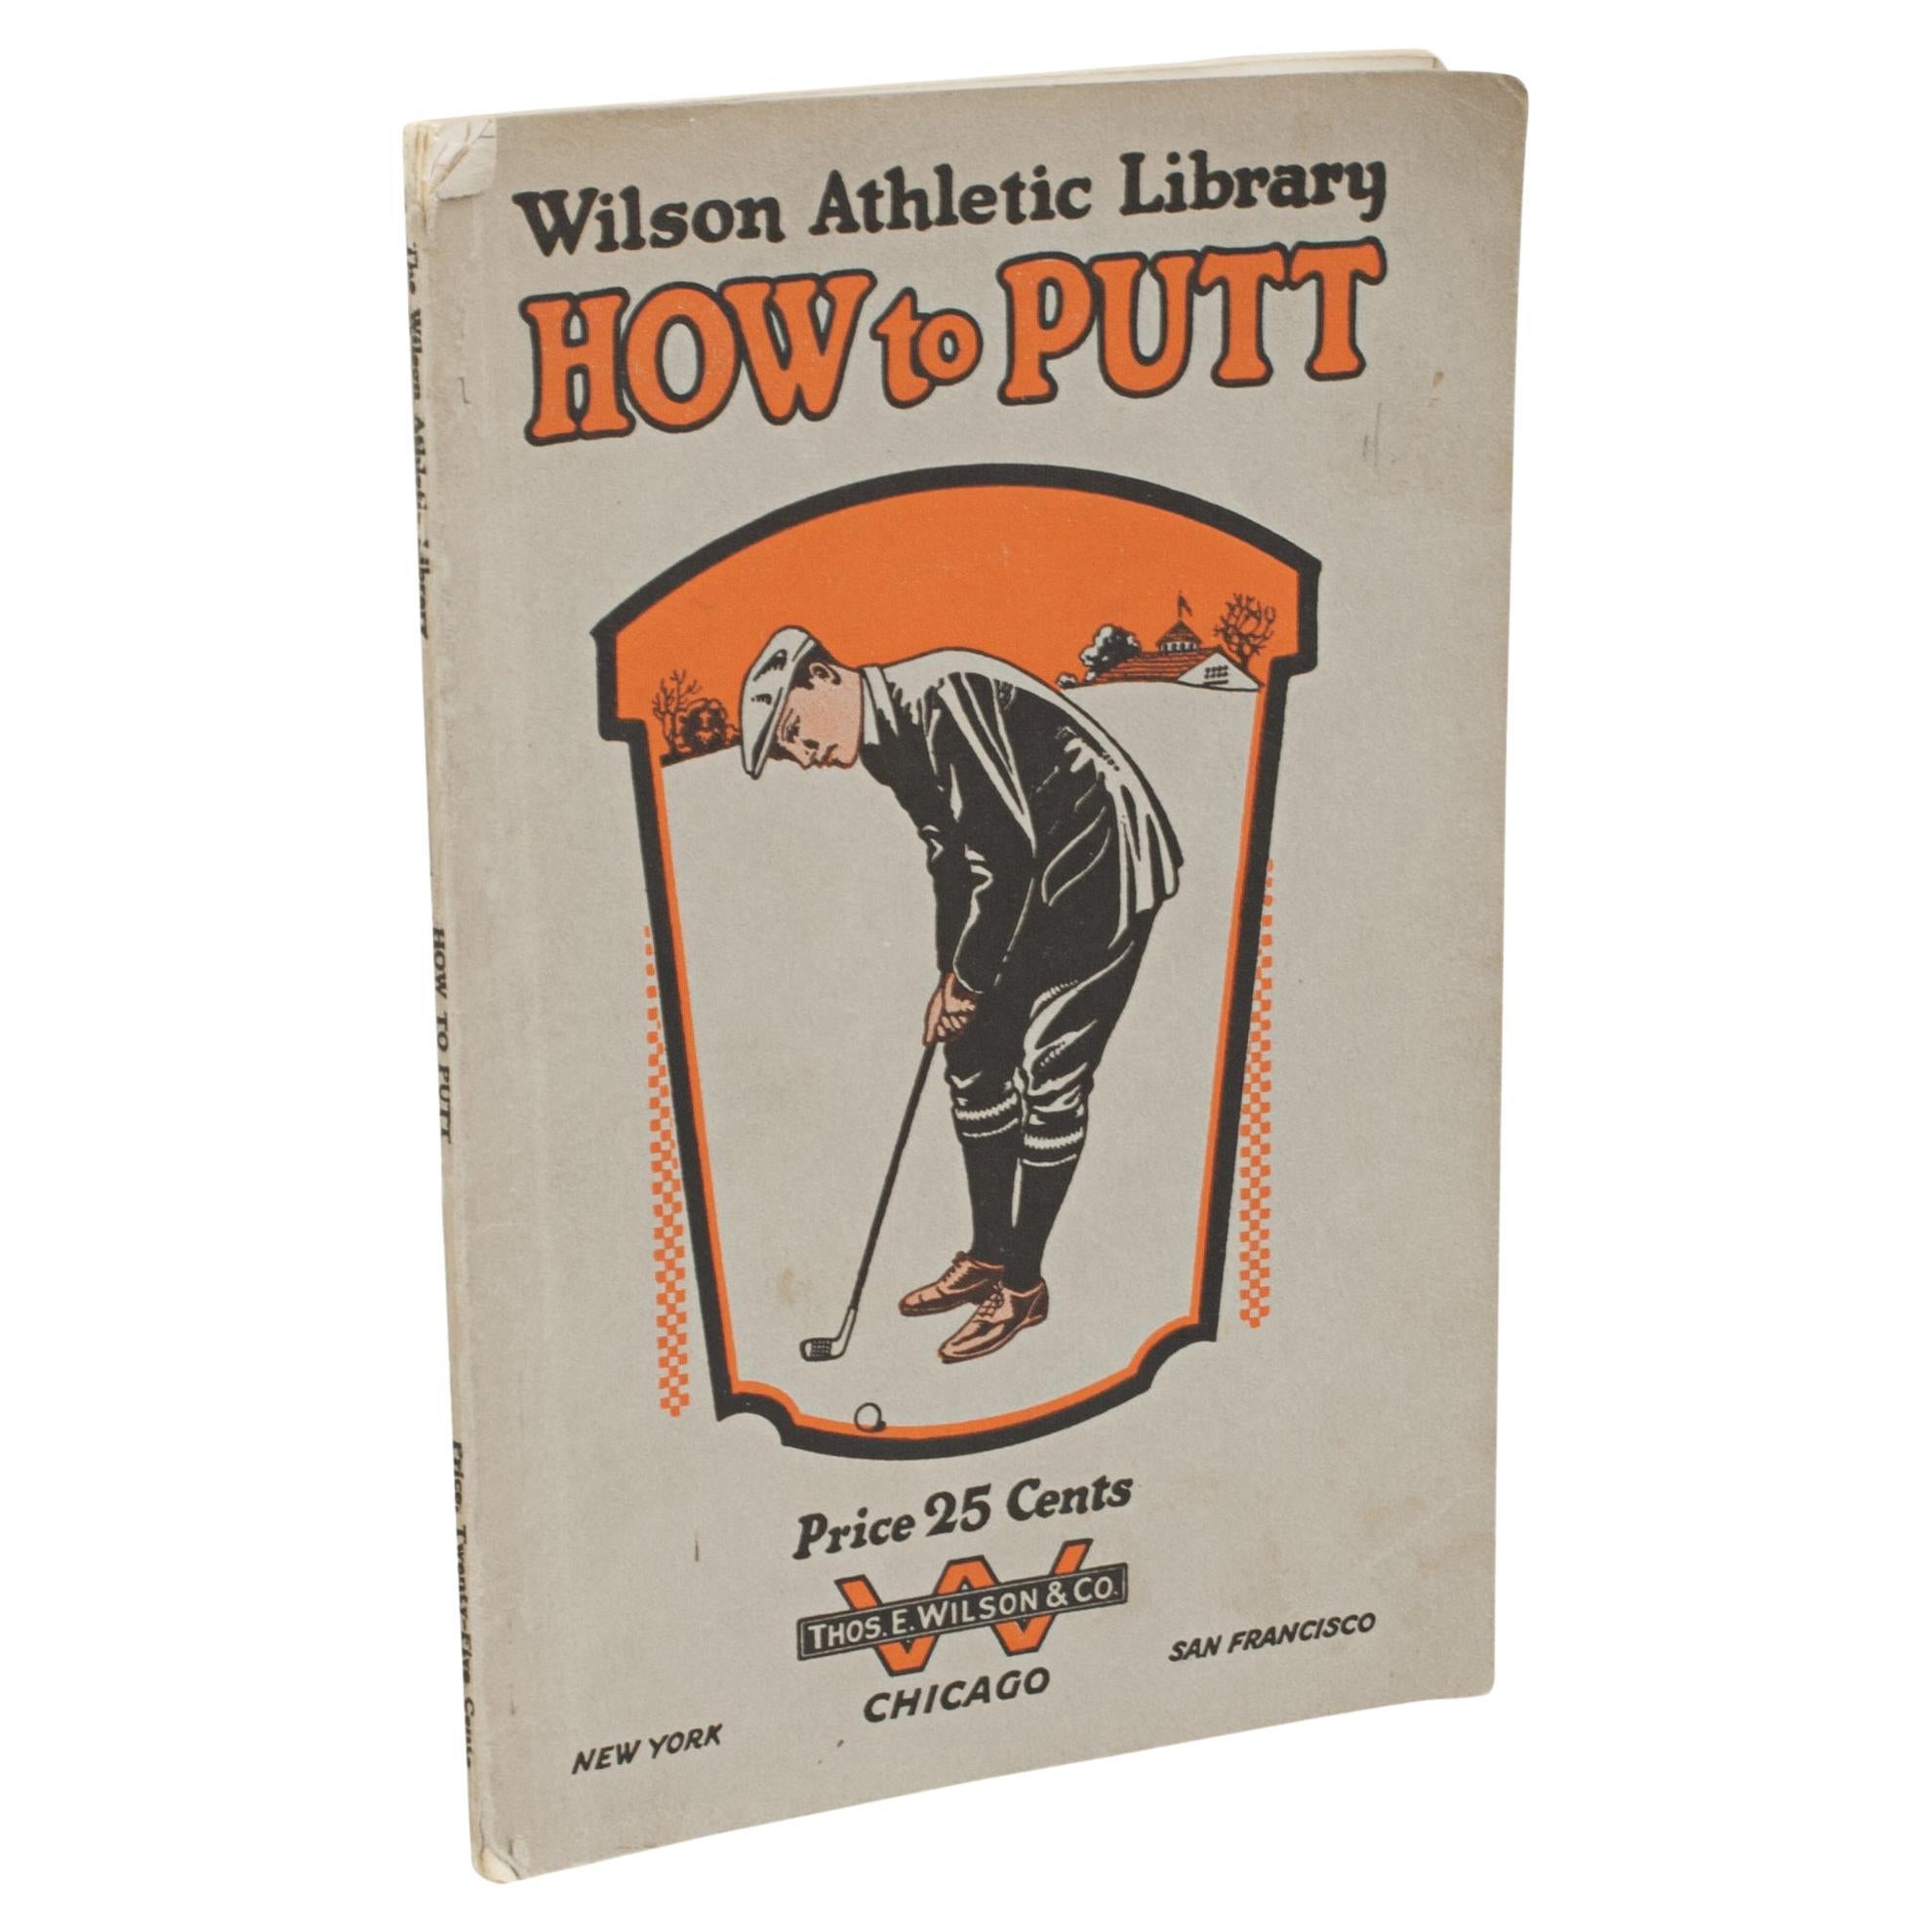 Golfbuch im Vintage-Stil, How to Putt